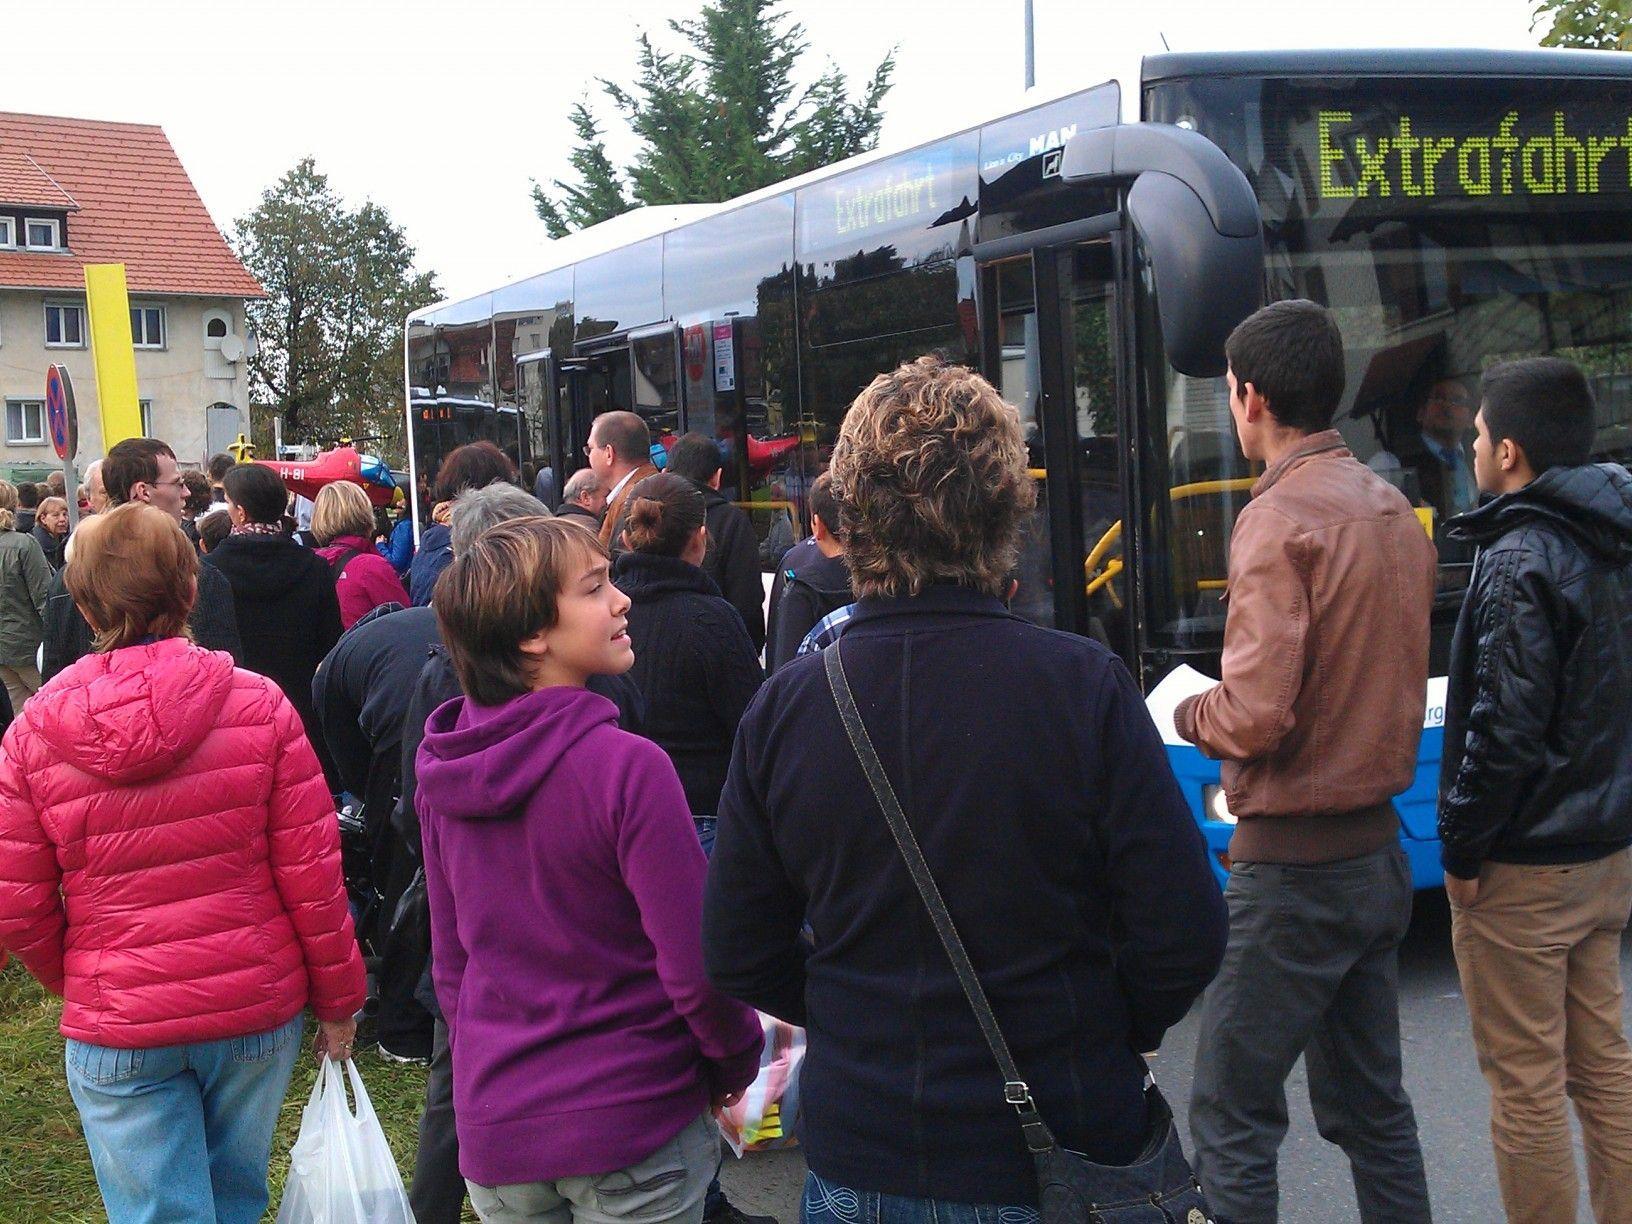 Extrafahrt: Volle Busse bringen Besucher zur Lustenauer Kilbi